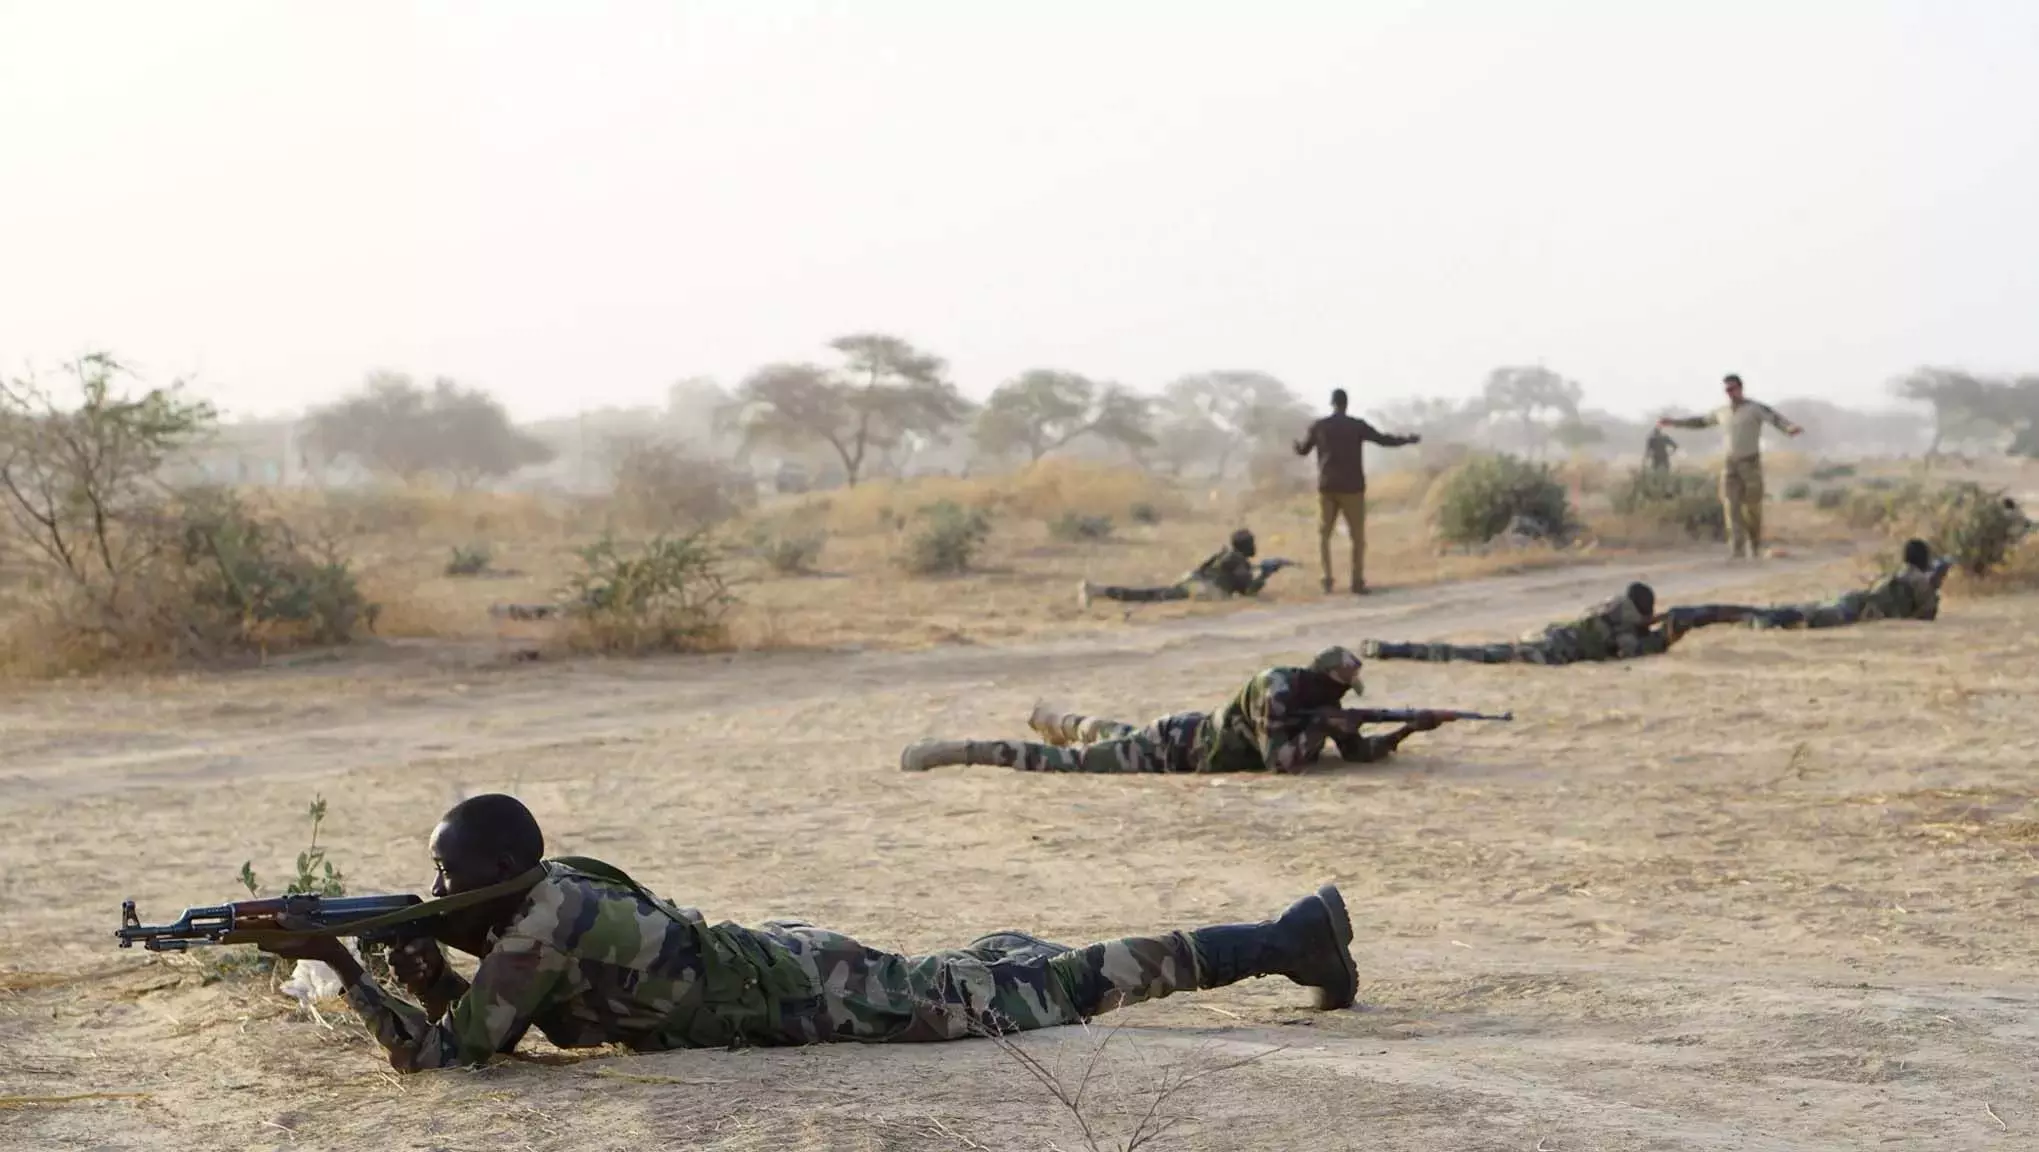 ISIS in Africa: नए खतरे की चुनौती भू राजनीतिक और सुरक्षा आगाज